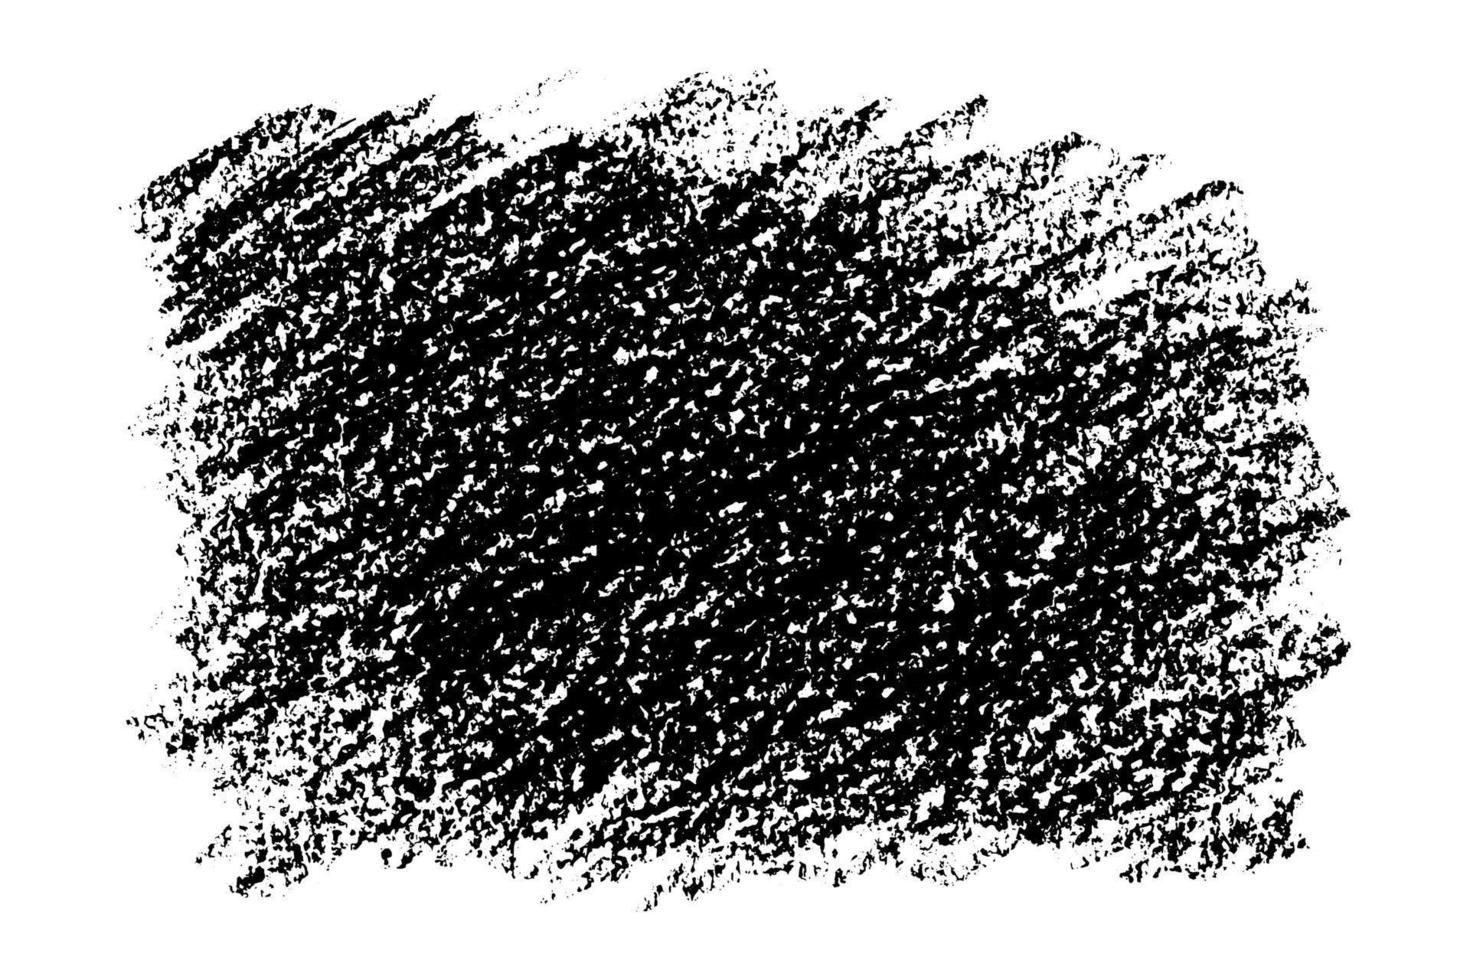 svart textur grunge bakgrund dragen med träkol. omvänd av krita klottrar isolerat på vit bakgrund. vektor illustration.